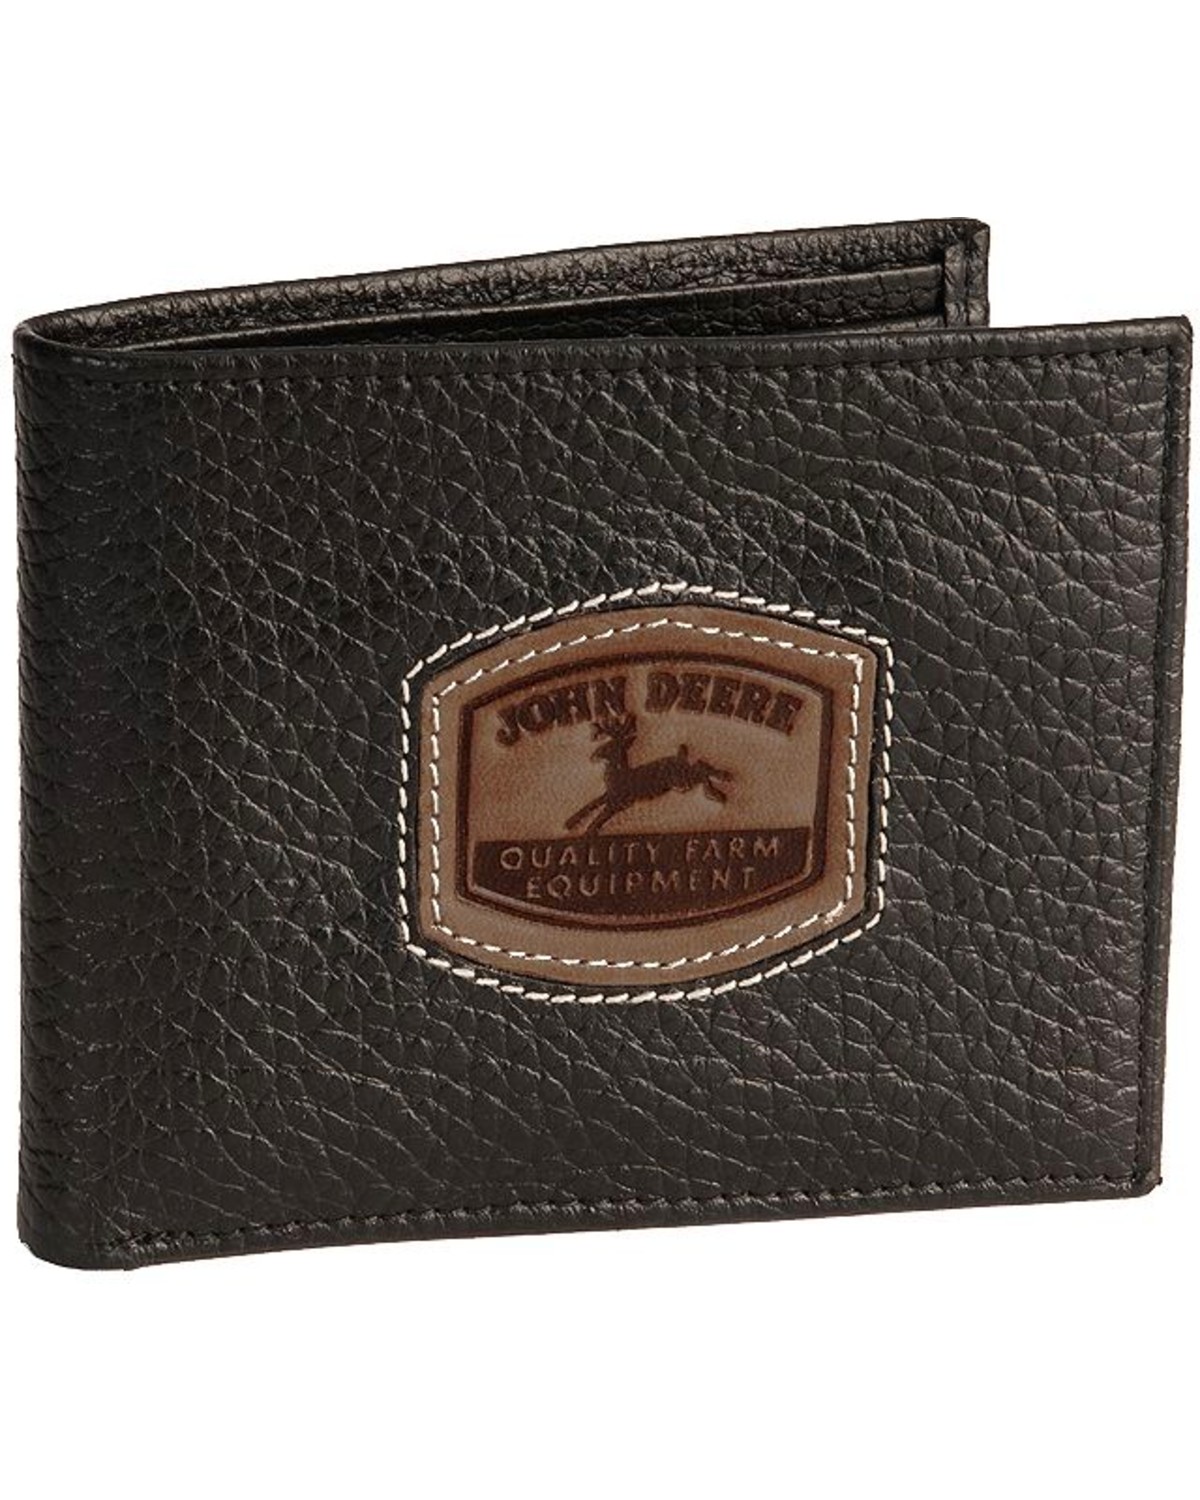 John Deere Bi-Fold Leather Wallet